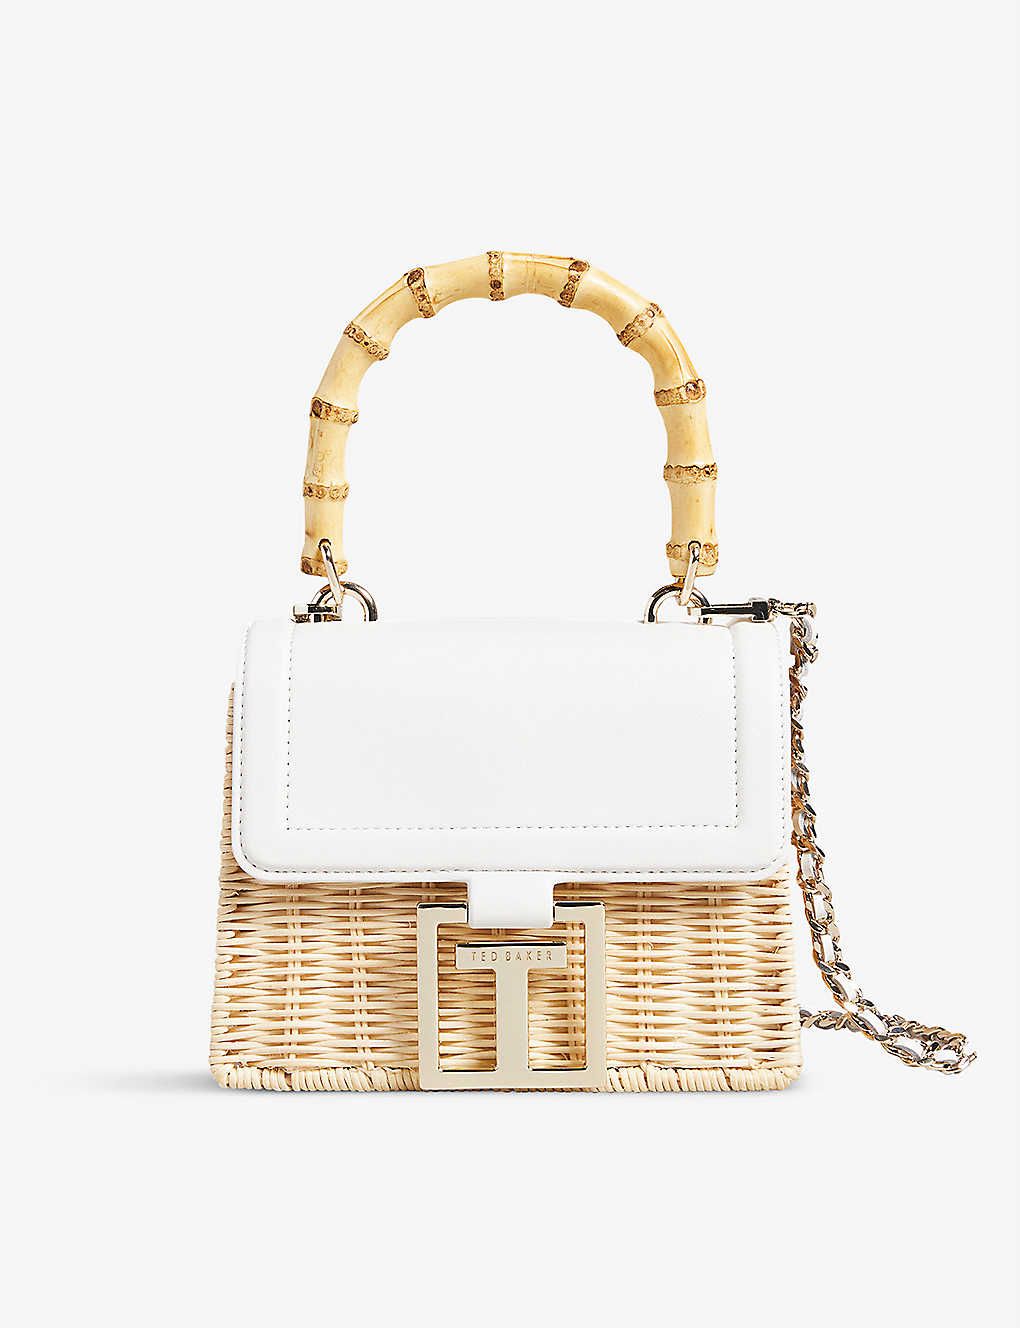 TED BAKER Jaylisa basket weave and leather crossbody bag | Selfridges